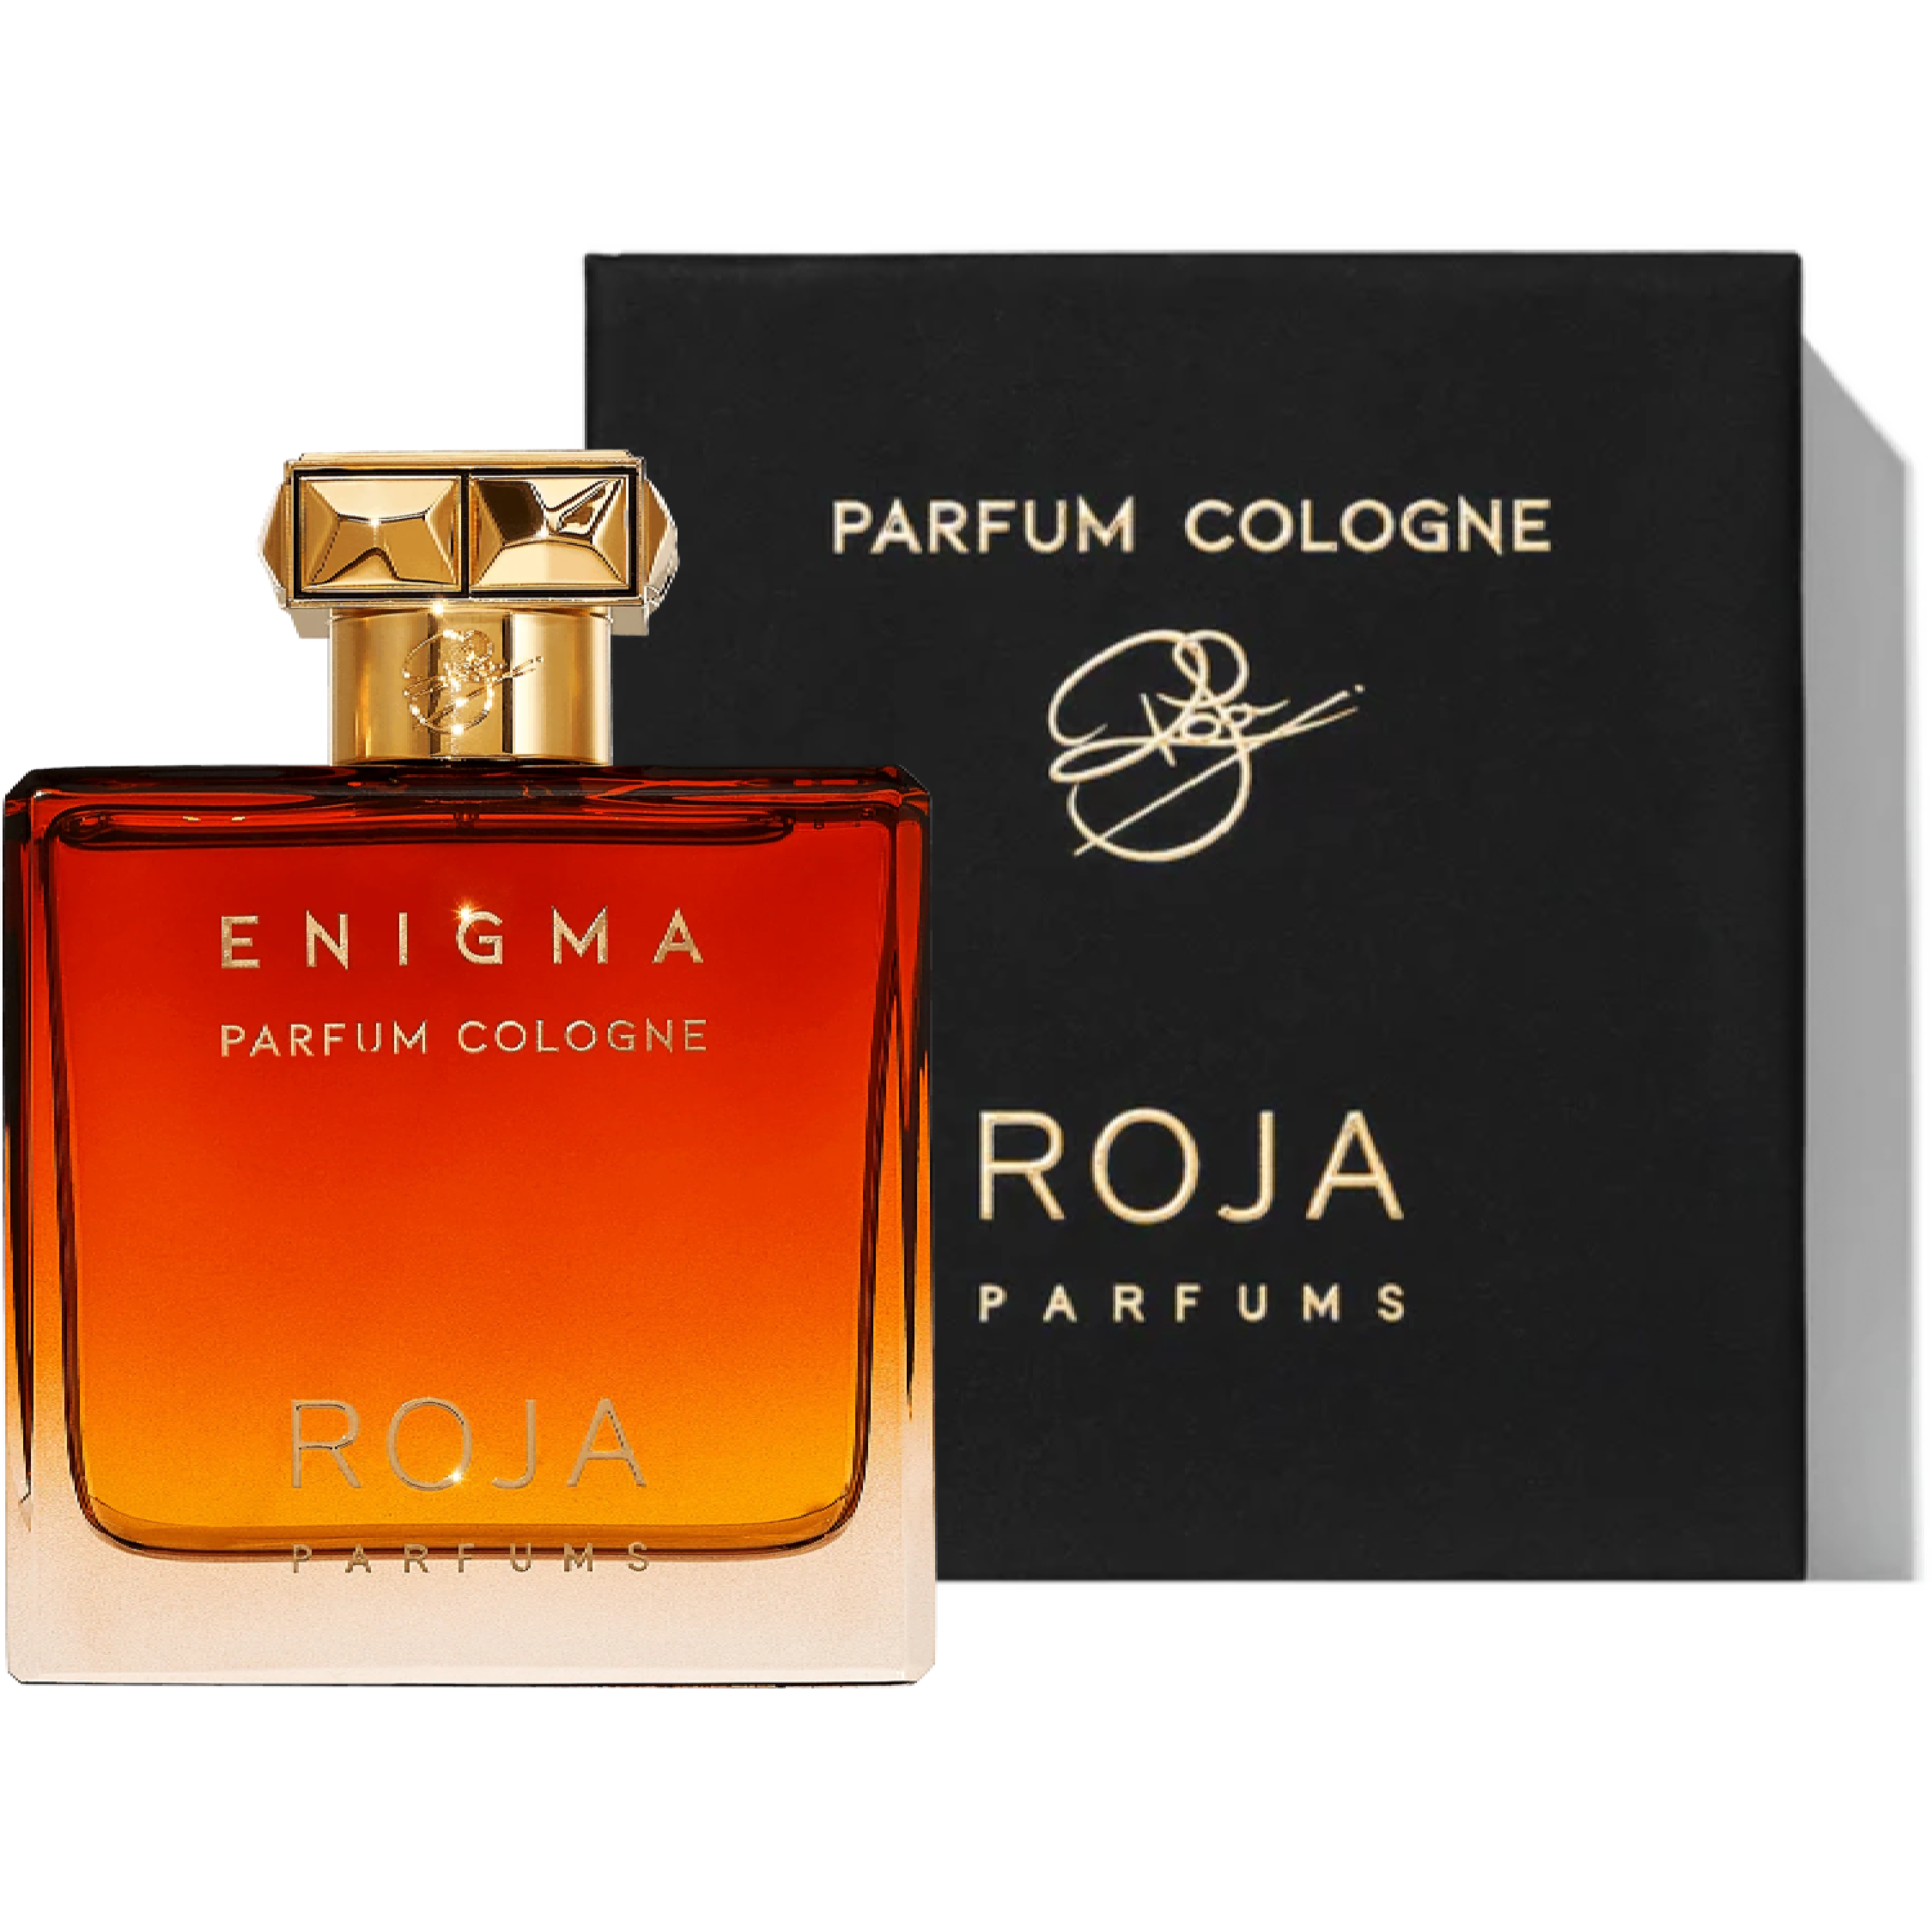 בושם לגבר Roja Enigma Pour Homme Parfum Cologne 100ml